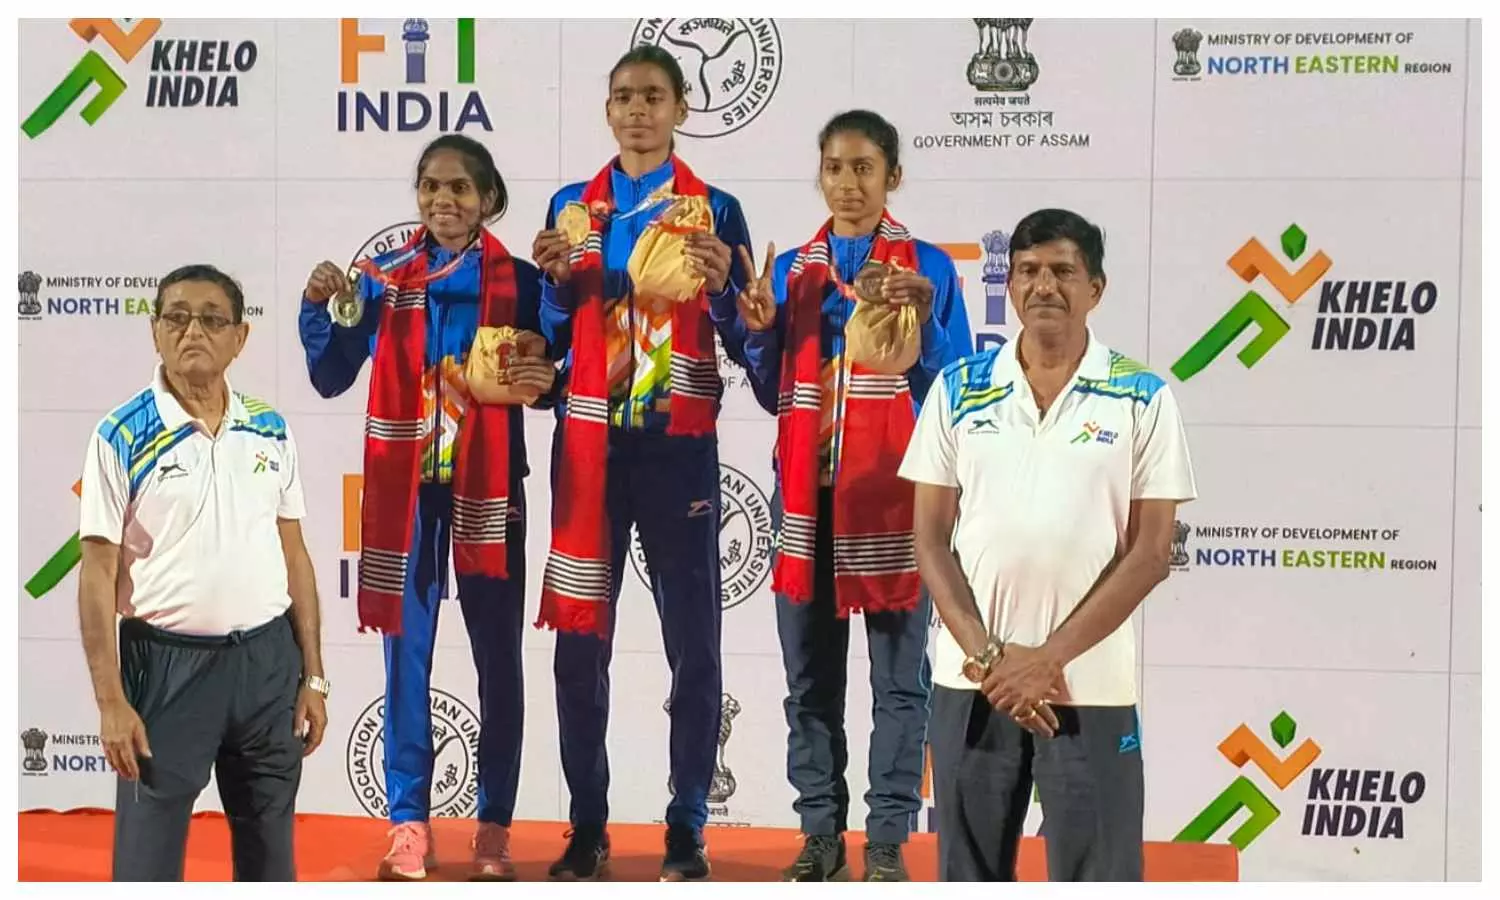 गोरखपुर विश्वविद्यालय की रंजना ने स्वर्ण और बिट्टू ने रजत पदक जीता।